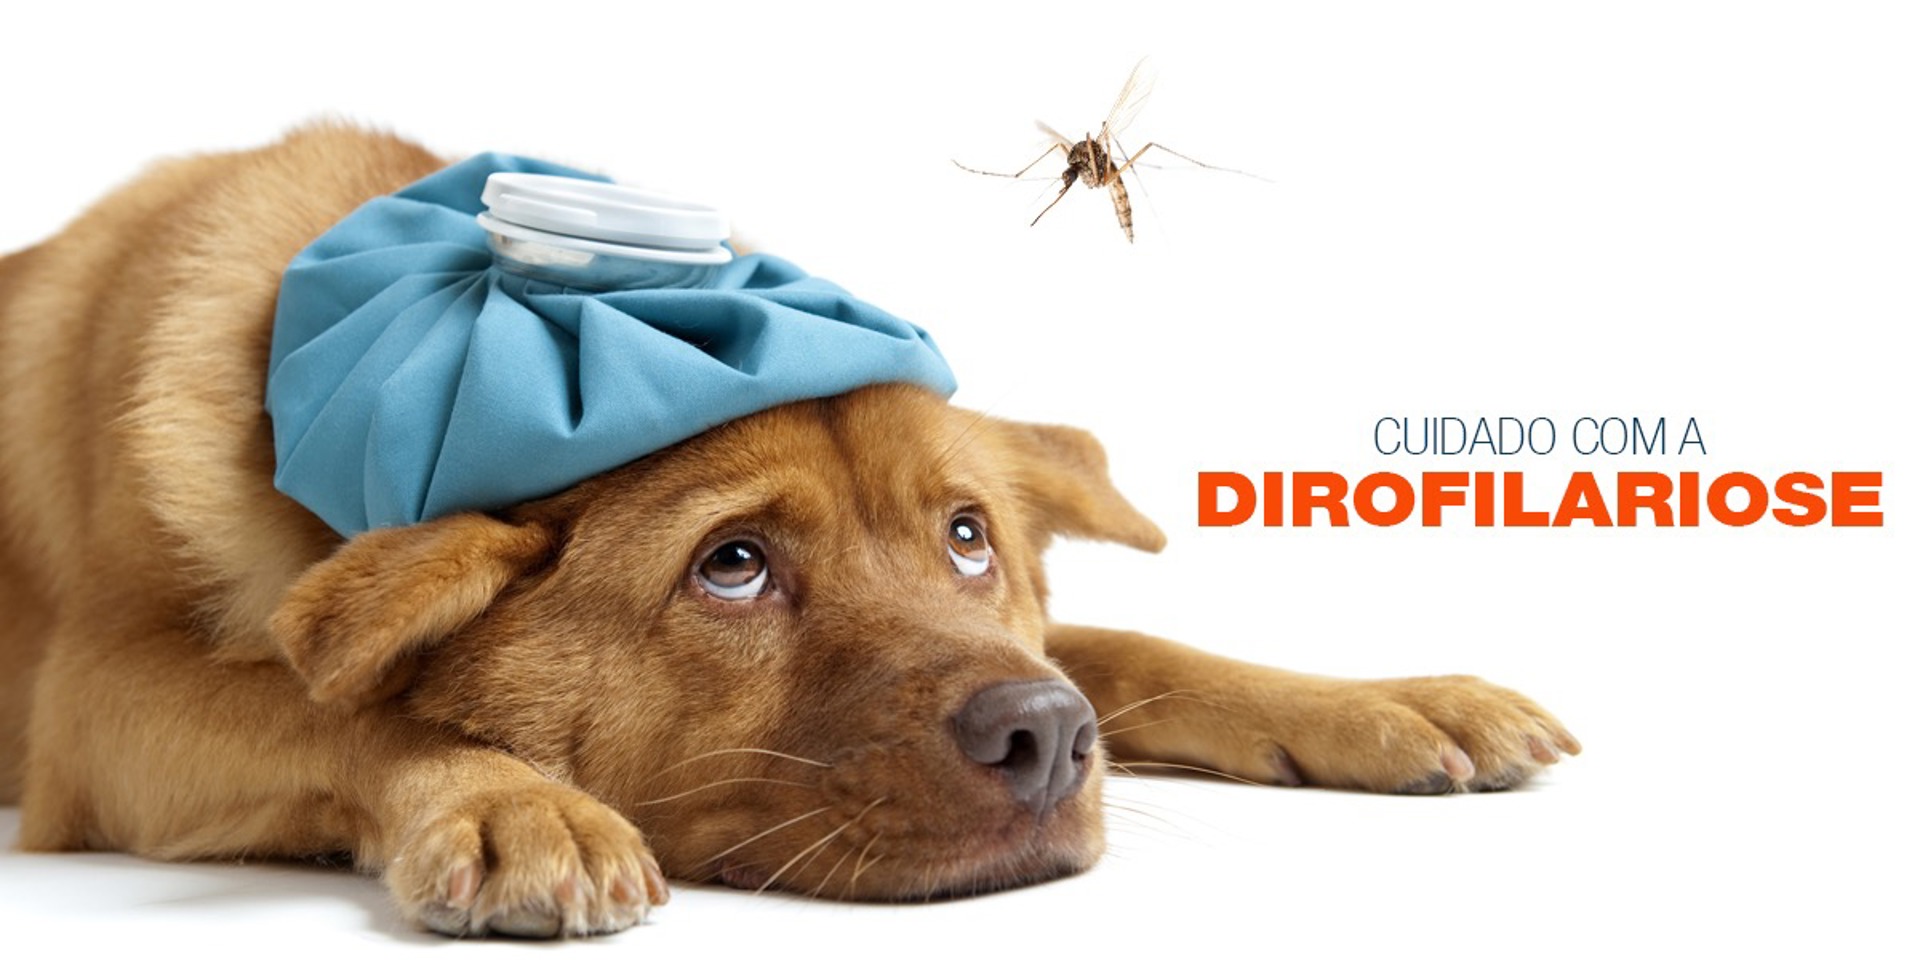 Dirofilariose Canina: o que é e quais os sintomas?